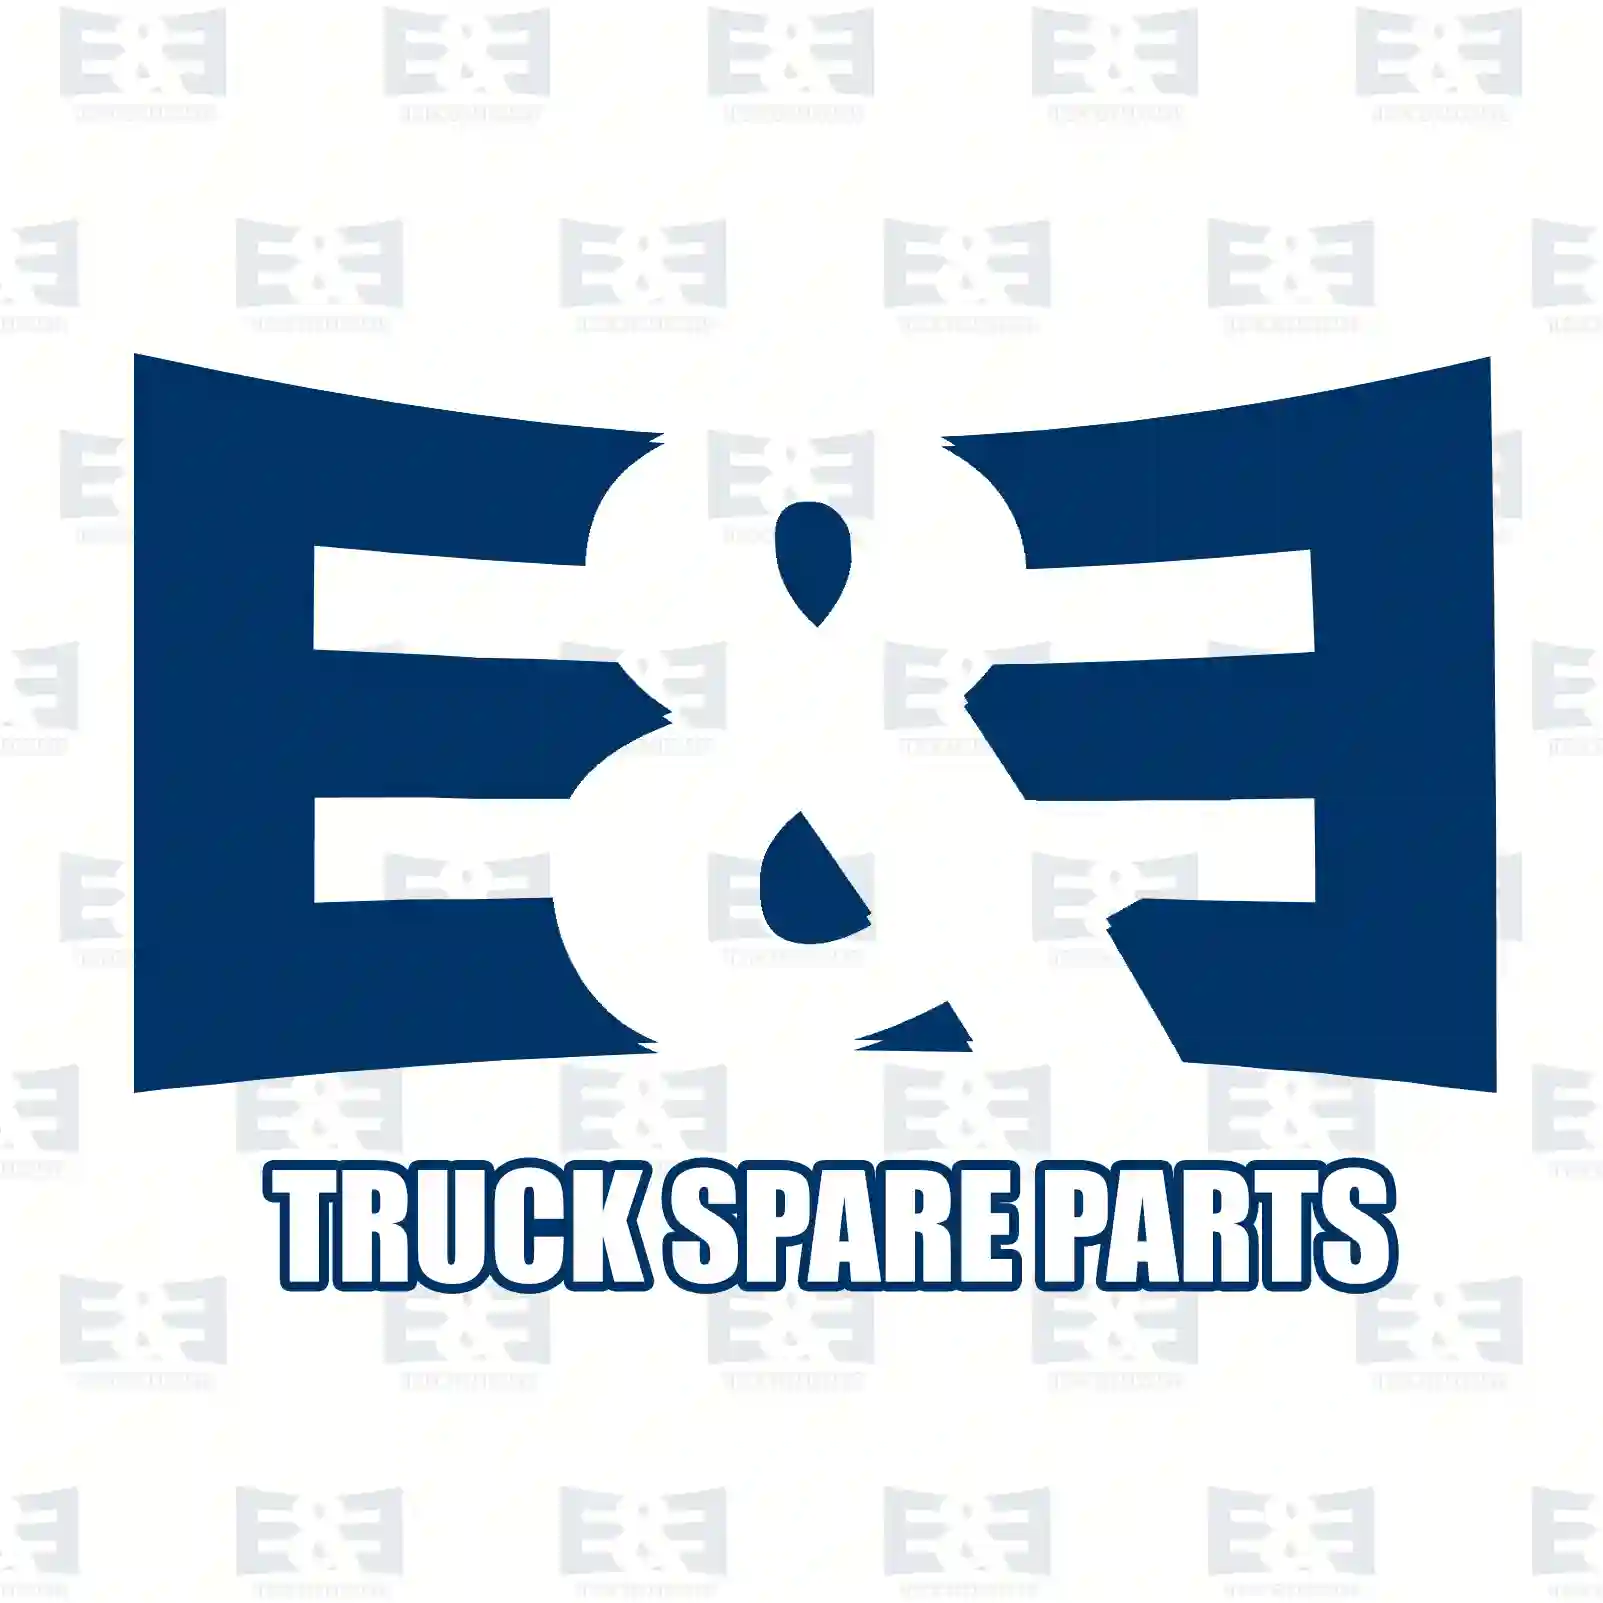 Unit injector, 2E2286923, 10574393, 1440579, 1574393, 574393 ||  2E2286923 E&E Truck Spare Parts | Truck Spare Parts, Auotomotive Spare Parts Unit injector, 2E2286923, 10574393, 1440579, 1574393, 574393 ||  2E2286923 E&E Truck Spare Parts | Truck Spare Parts, Auotomotive Spare Parts